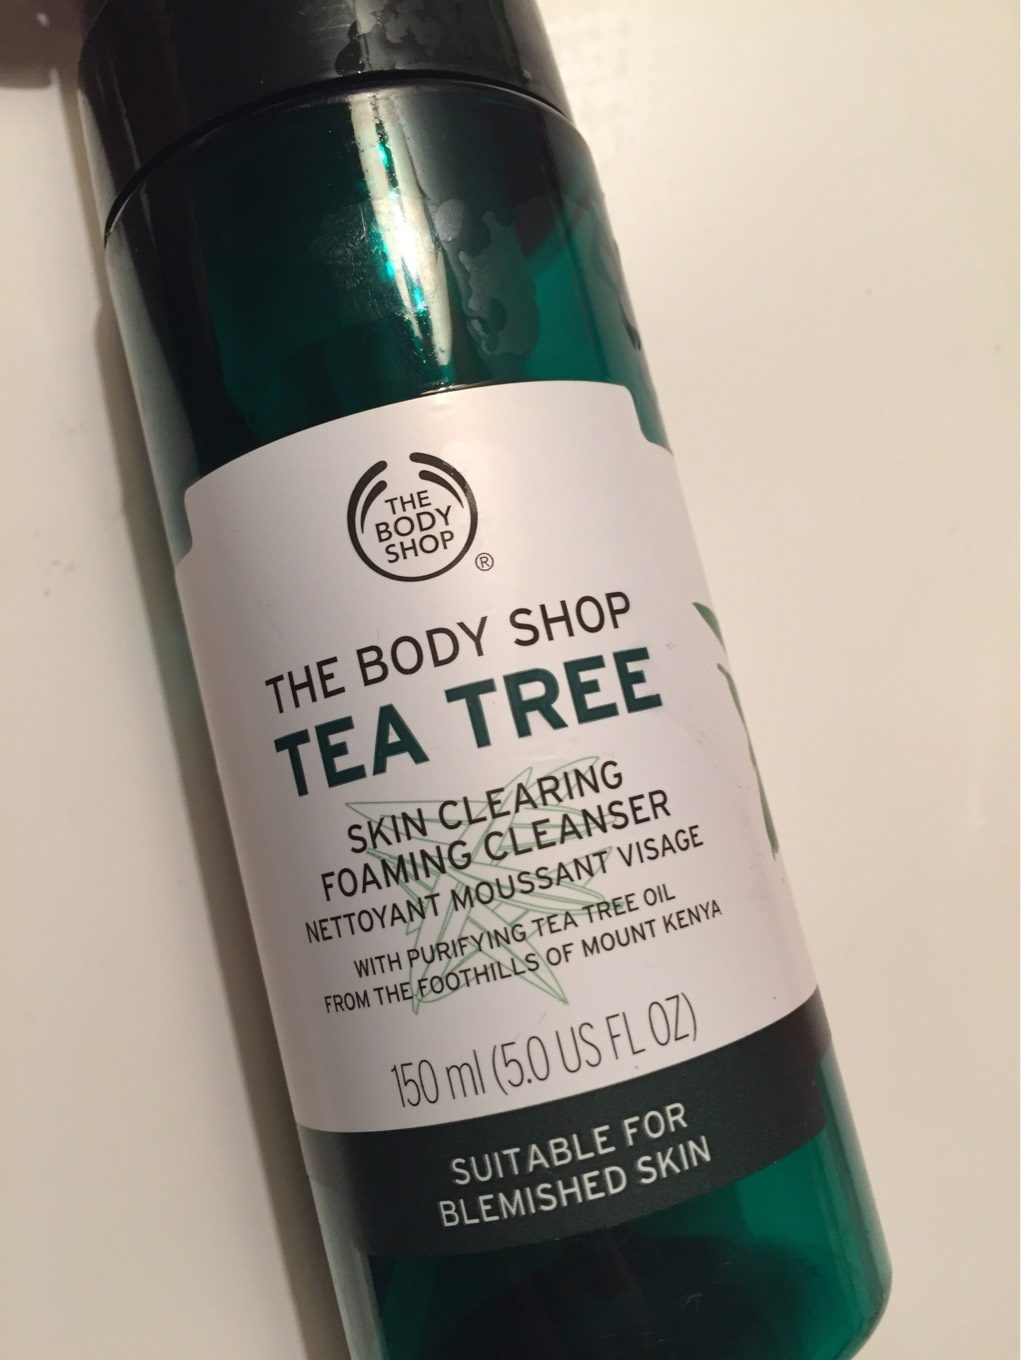 Tea Tree Skin Clearing Foaming Cleanser - Produit - fr